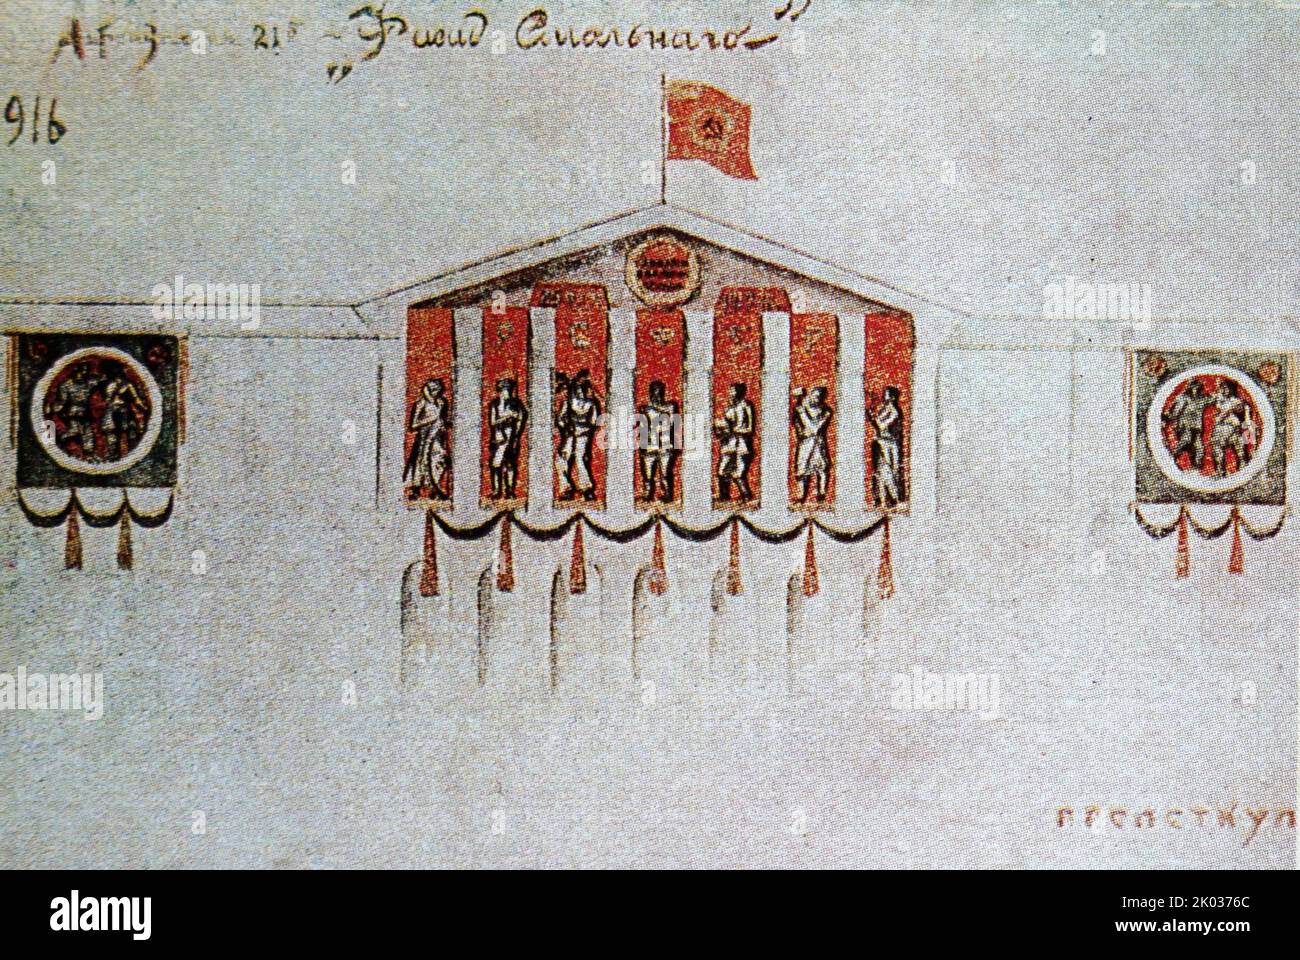 Una brigada de artistas. Dibujo del diseño de la fachada del Instituto Smolny. (Reproducido de una tarjeta postal). En 1917, Vladimir Lenin eligió el edificio como cuartel general bolchevique inmediatamente antes y durante la Revolución de Octubre. Foto de stock